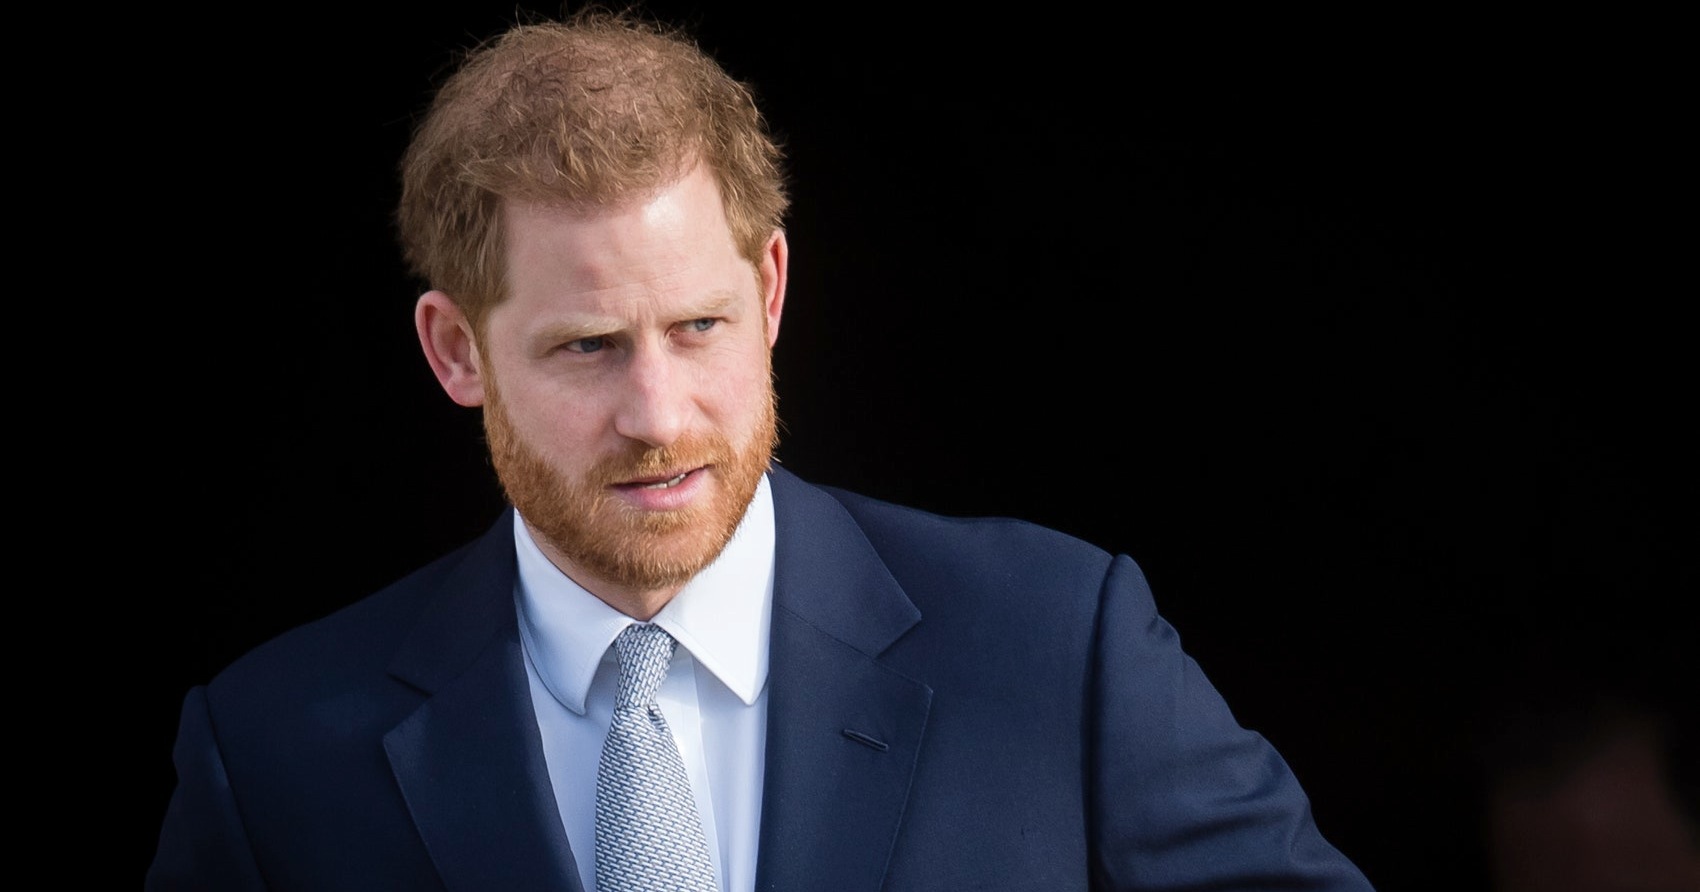 Biógrafa real tacha al príncipe Harry de desleal y grosero por aceptar contrato con Netflix